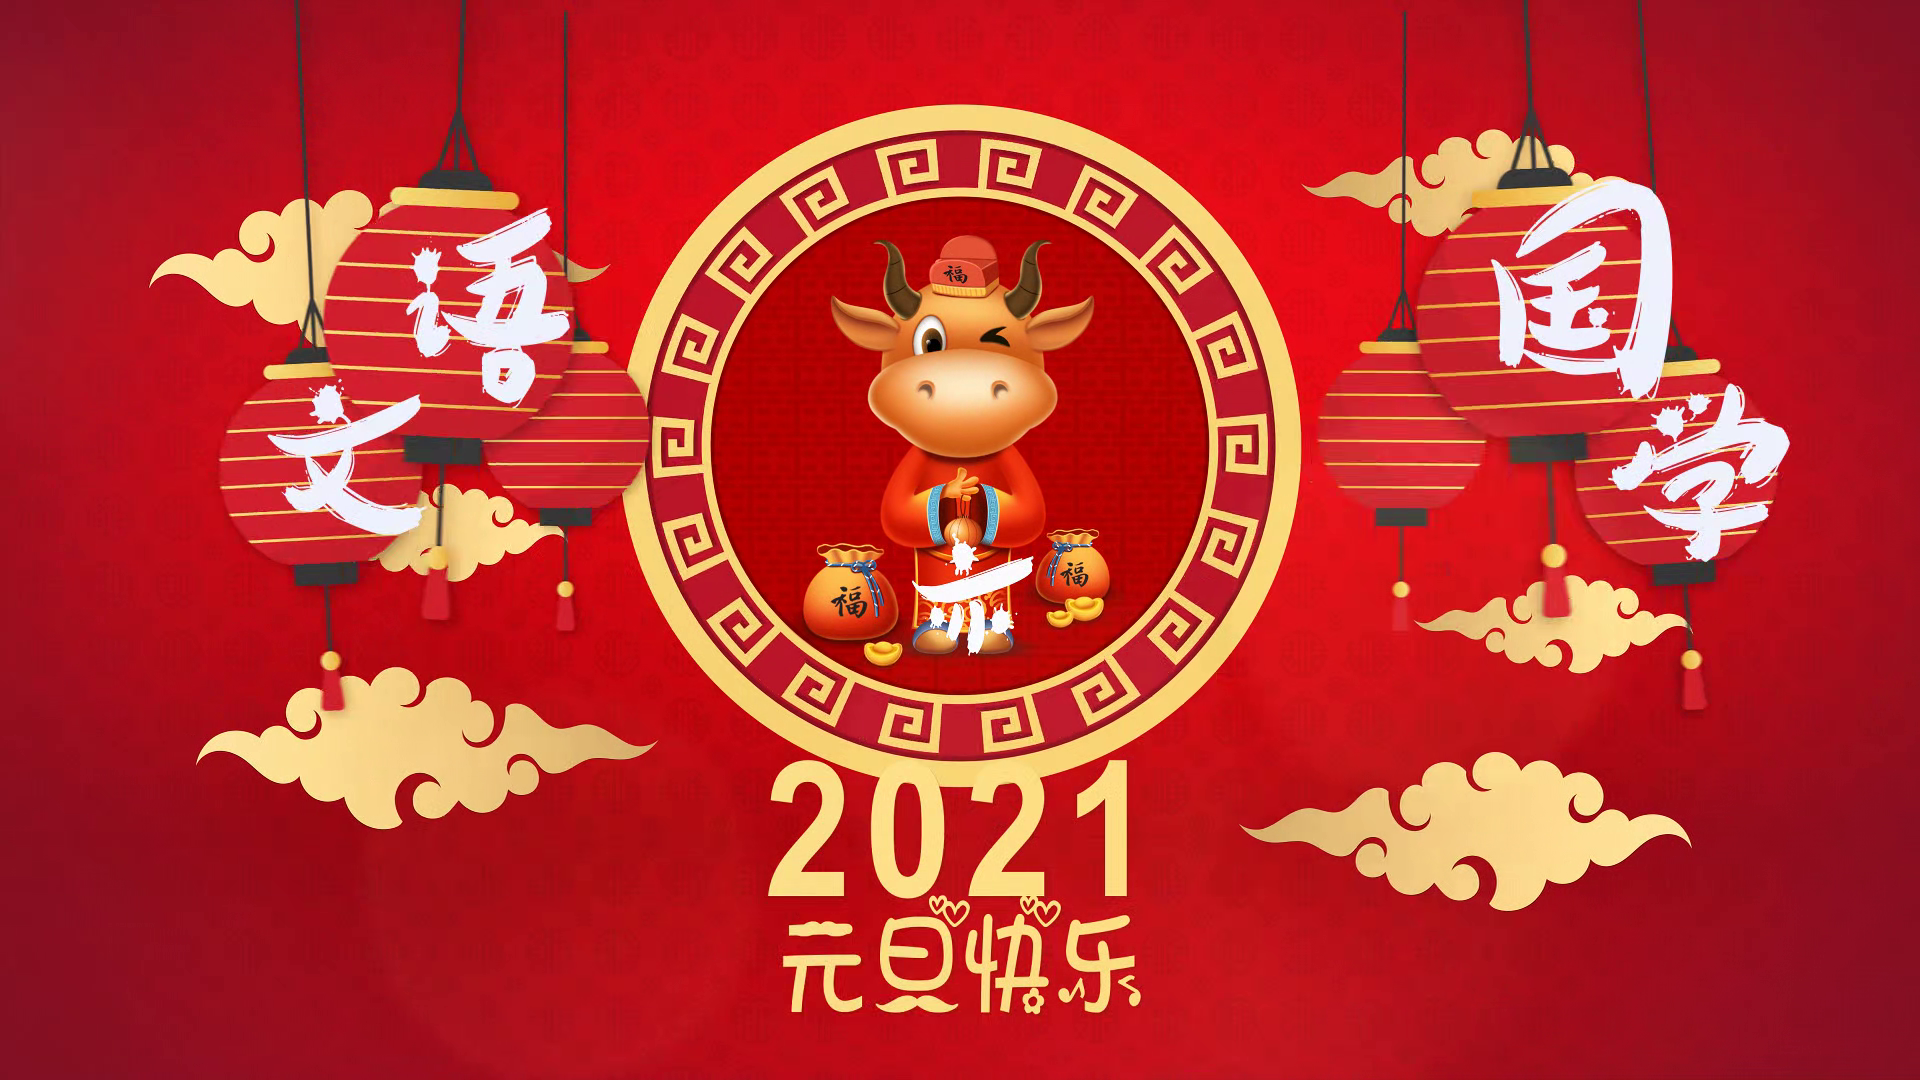 语文亦国学恭祝2021年新年快乐!